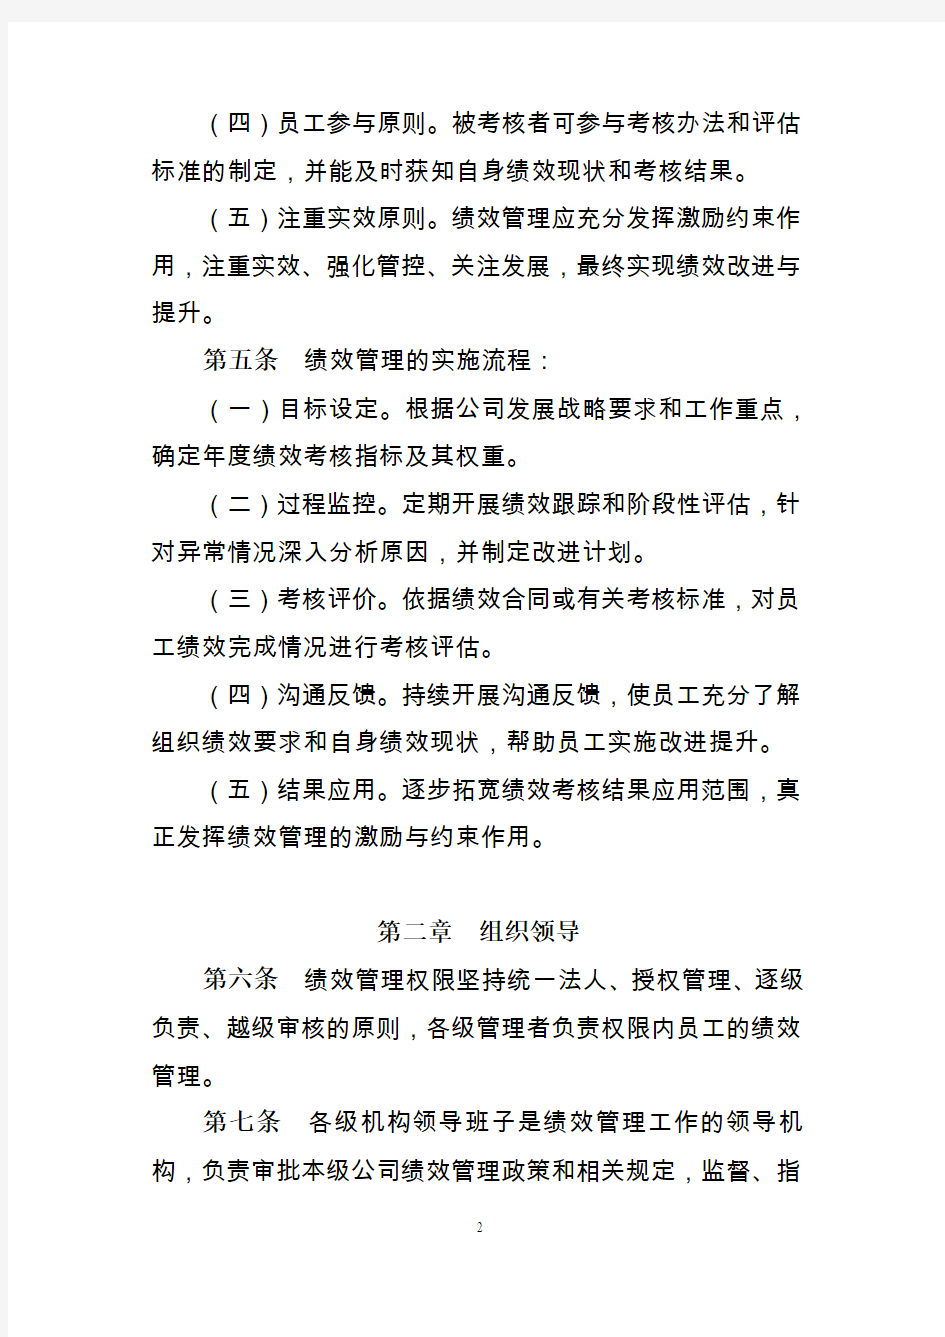 中国人民财产保险股份有限公司员工绩效管理暂行办法